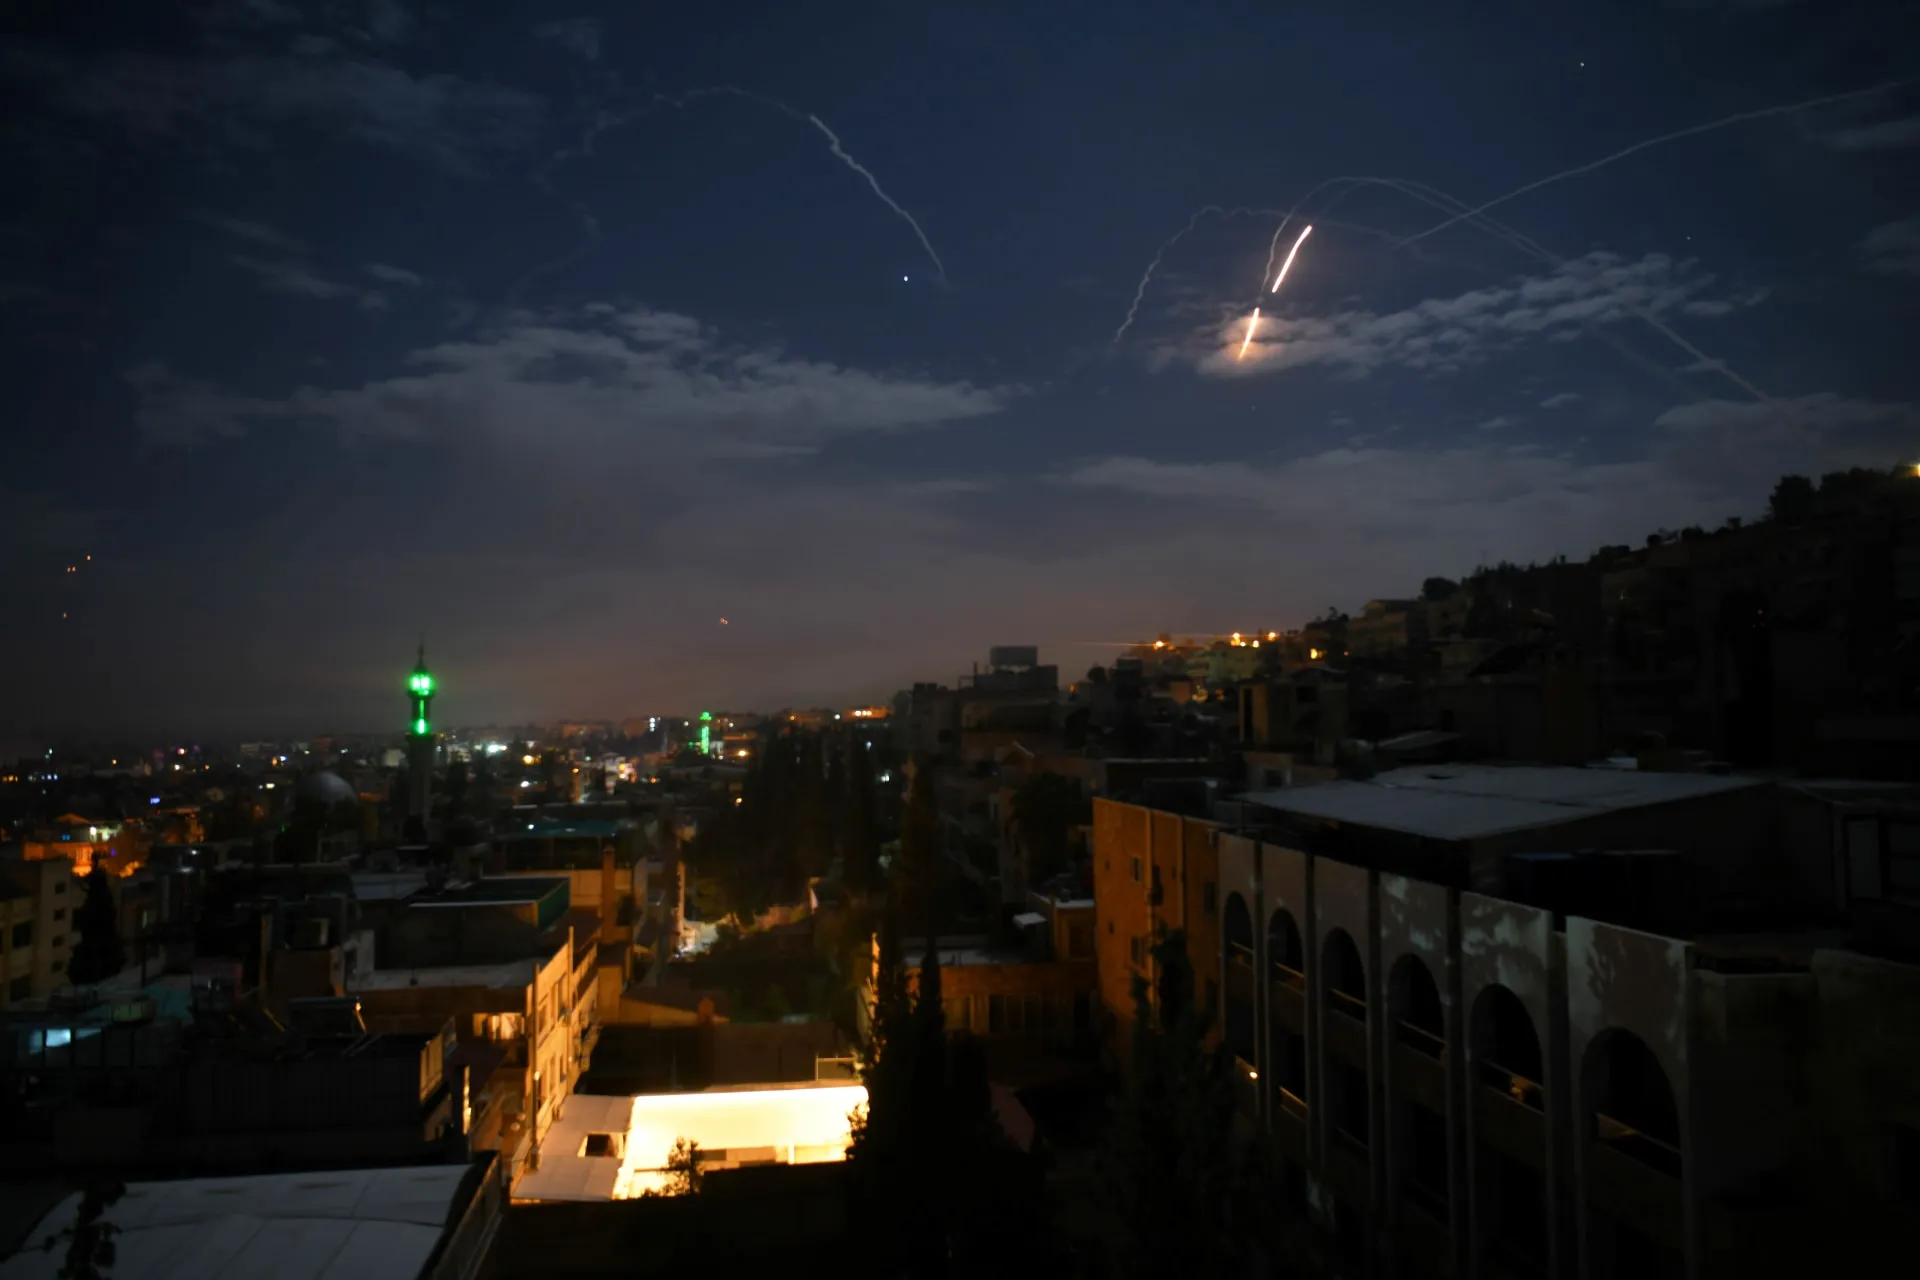 "المصالحة الروسية" يكشف خسائر النظام بآخر قصف إسرائيلي غربي دمشق